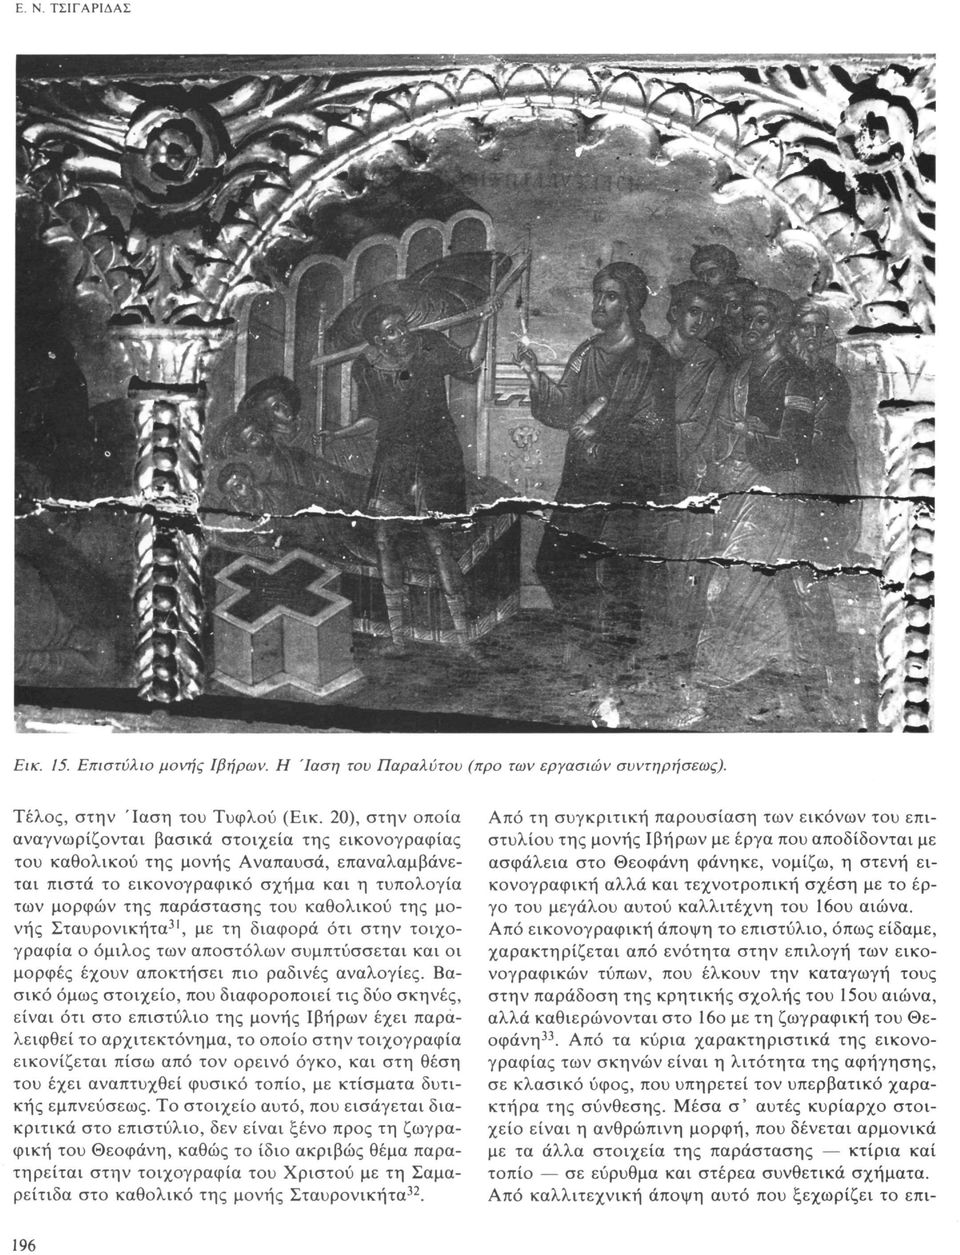 της μονής Σταυρονικήτα 31, με τη διαφορά ότι στην τοιχογραφία ο όμιλος των αποστόλων συμπτύσσεται και οι μορφές έχουν αποκτήσει πιο ραδινές αναλογίες.